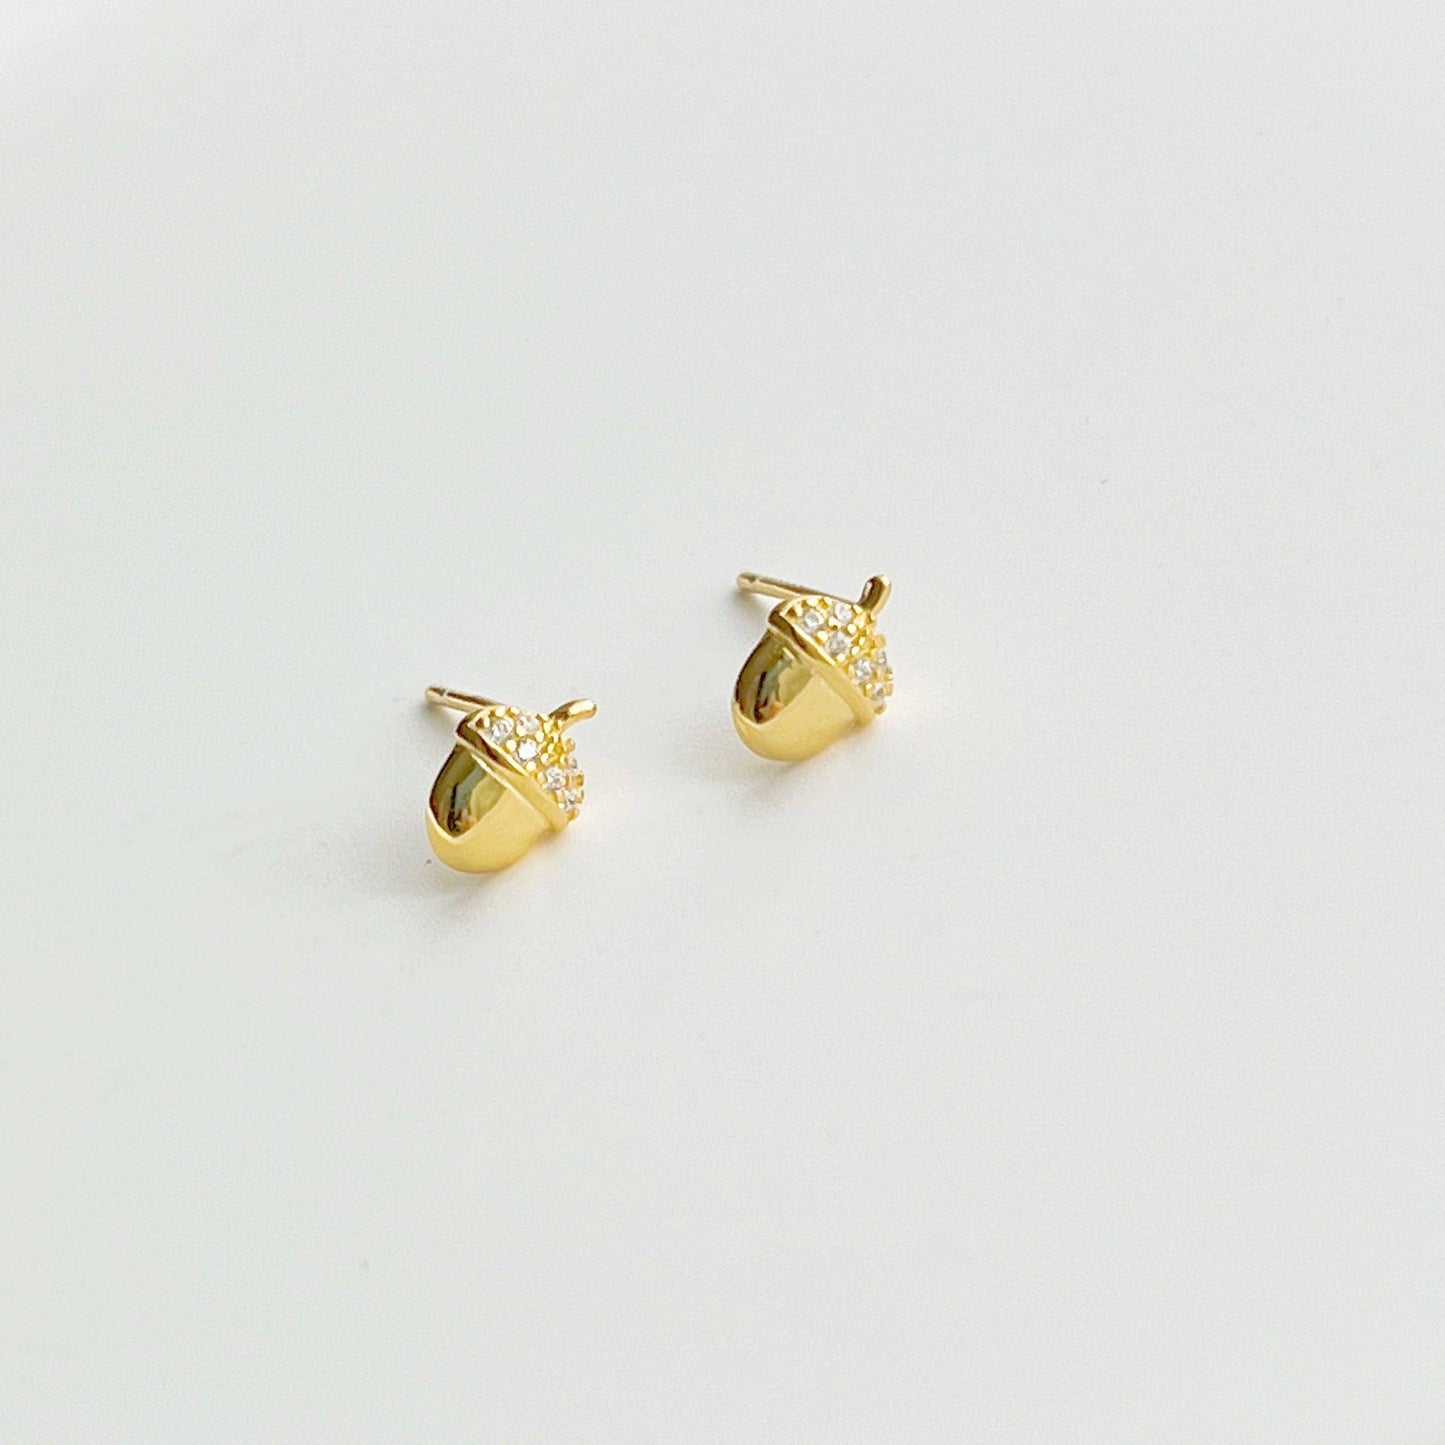 Mini Golden Nuts Earrings - Tiny Size Sterling Silver Stud Earrings-Ninaouity